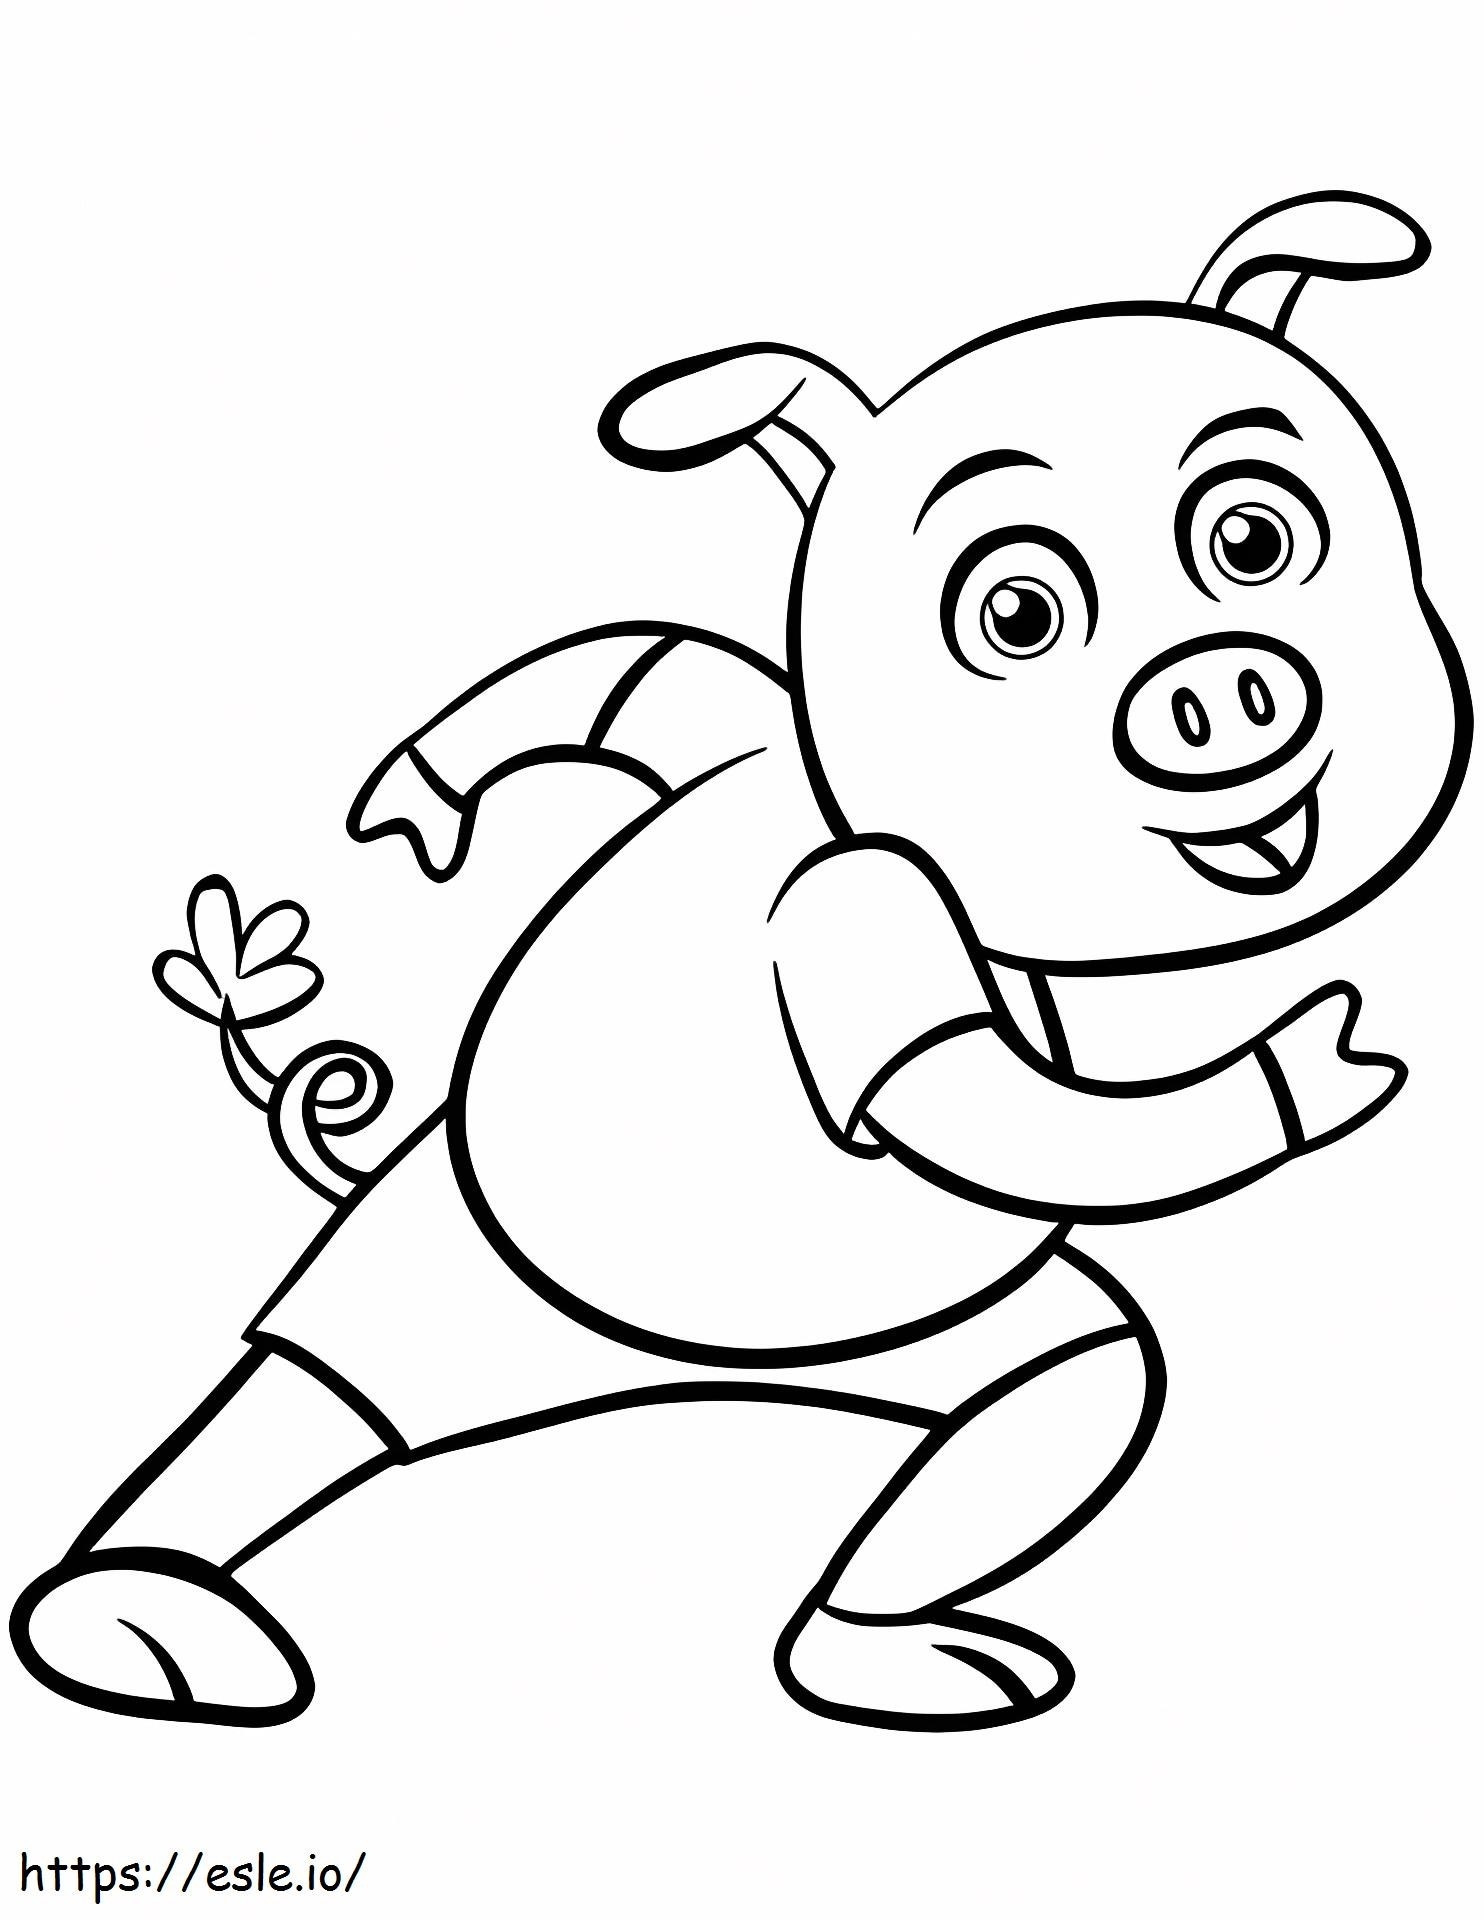 1532750153 Happy Cartoon Pig A4 coloring page